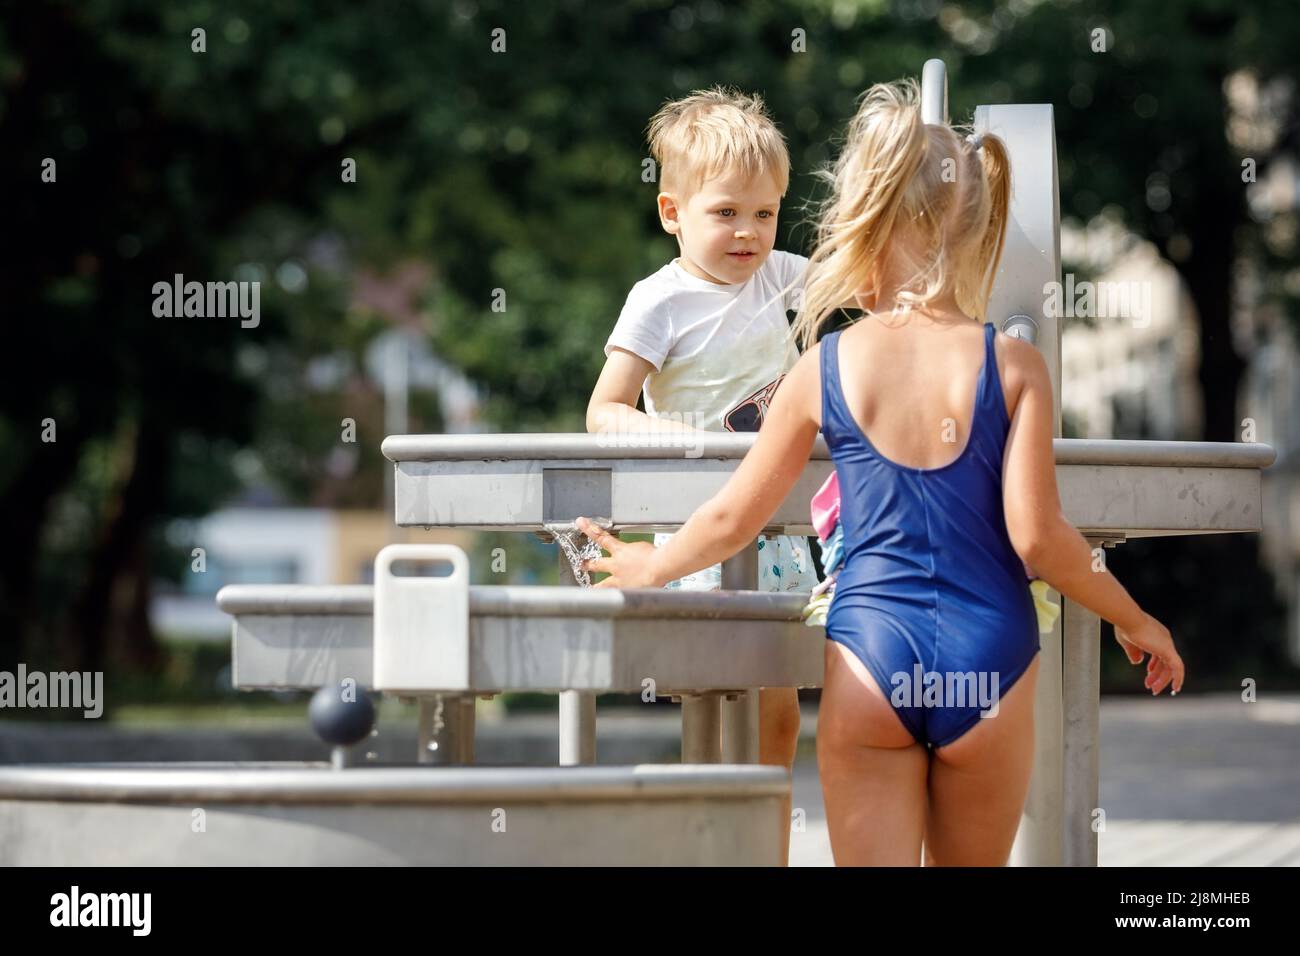 Ein glücklicher kleiner Junge und ein nettes Mädchen in einem blauen Badeanzug spielen mit einem Wasserhahn in einem Stadtpark. Spezielle Wasserausrüstung für Kinderspiele auf einer heißen Summe Stockfoto